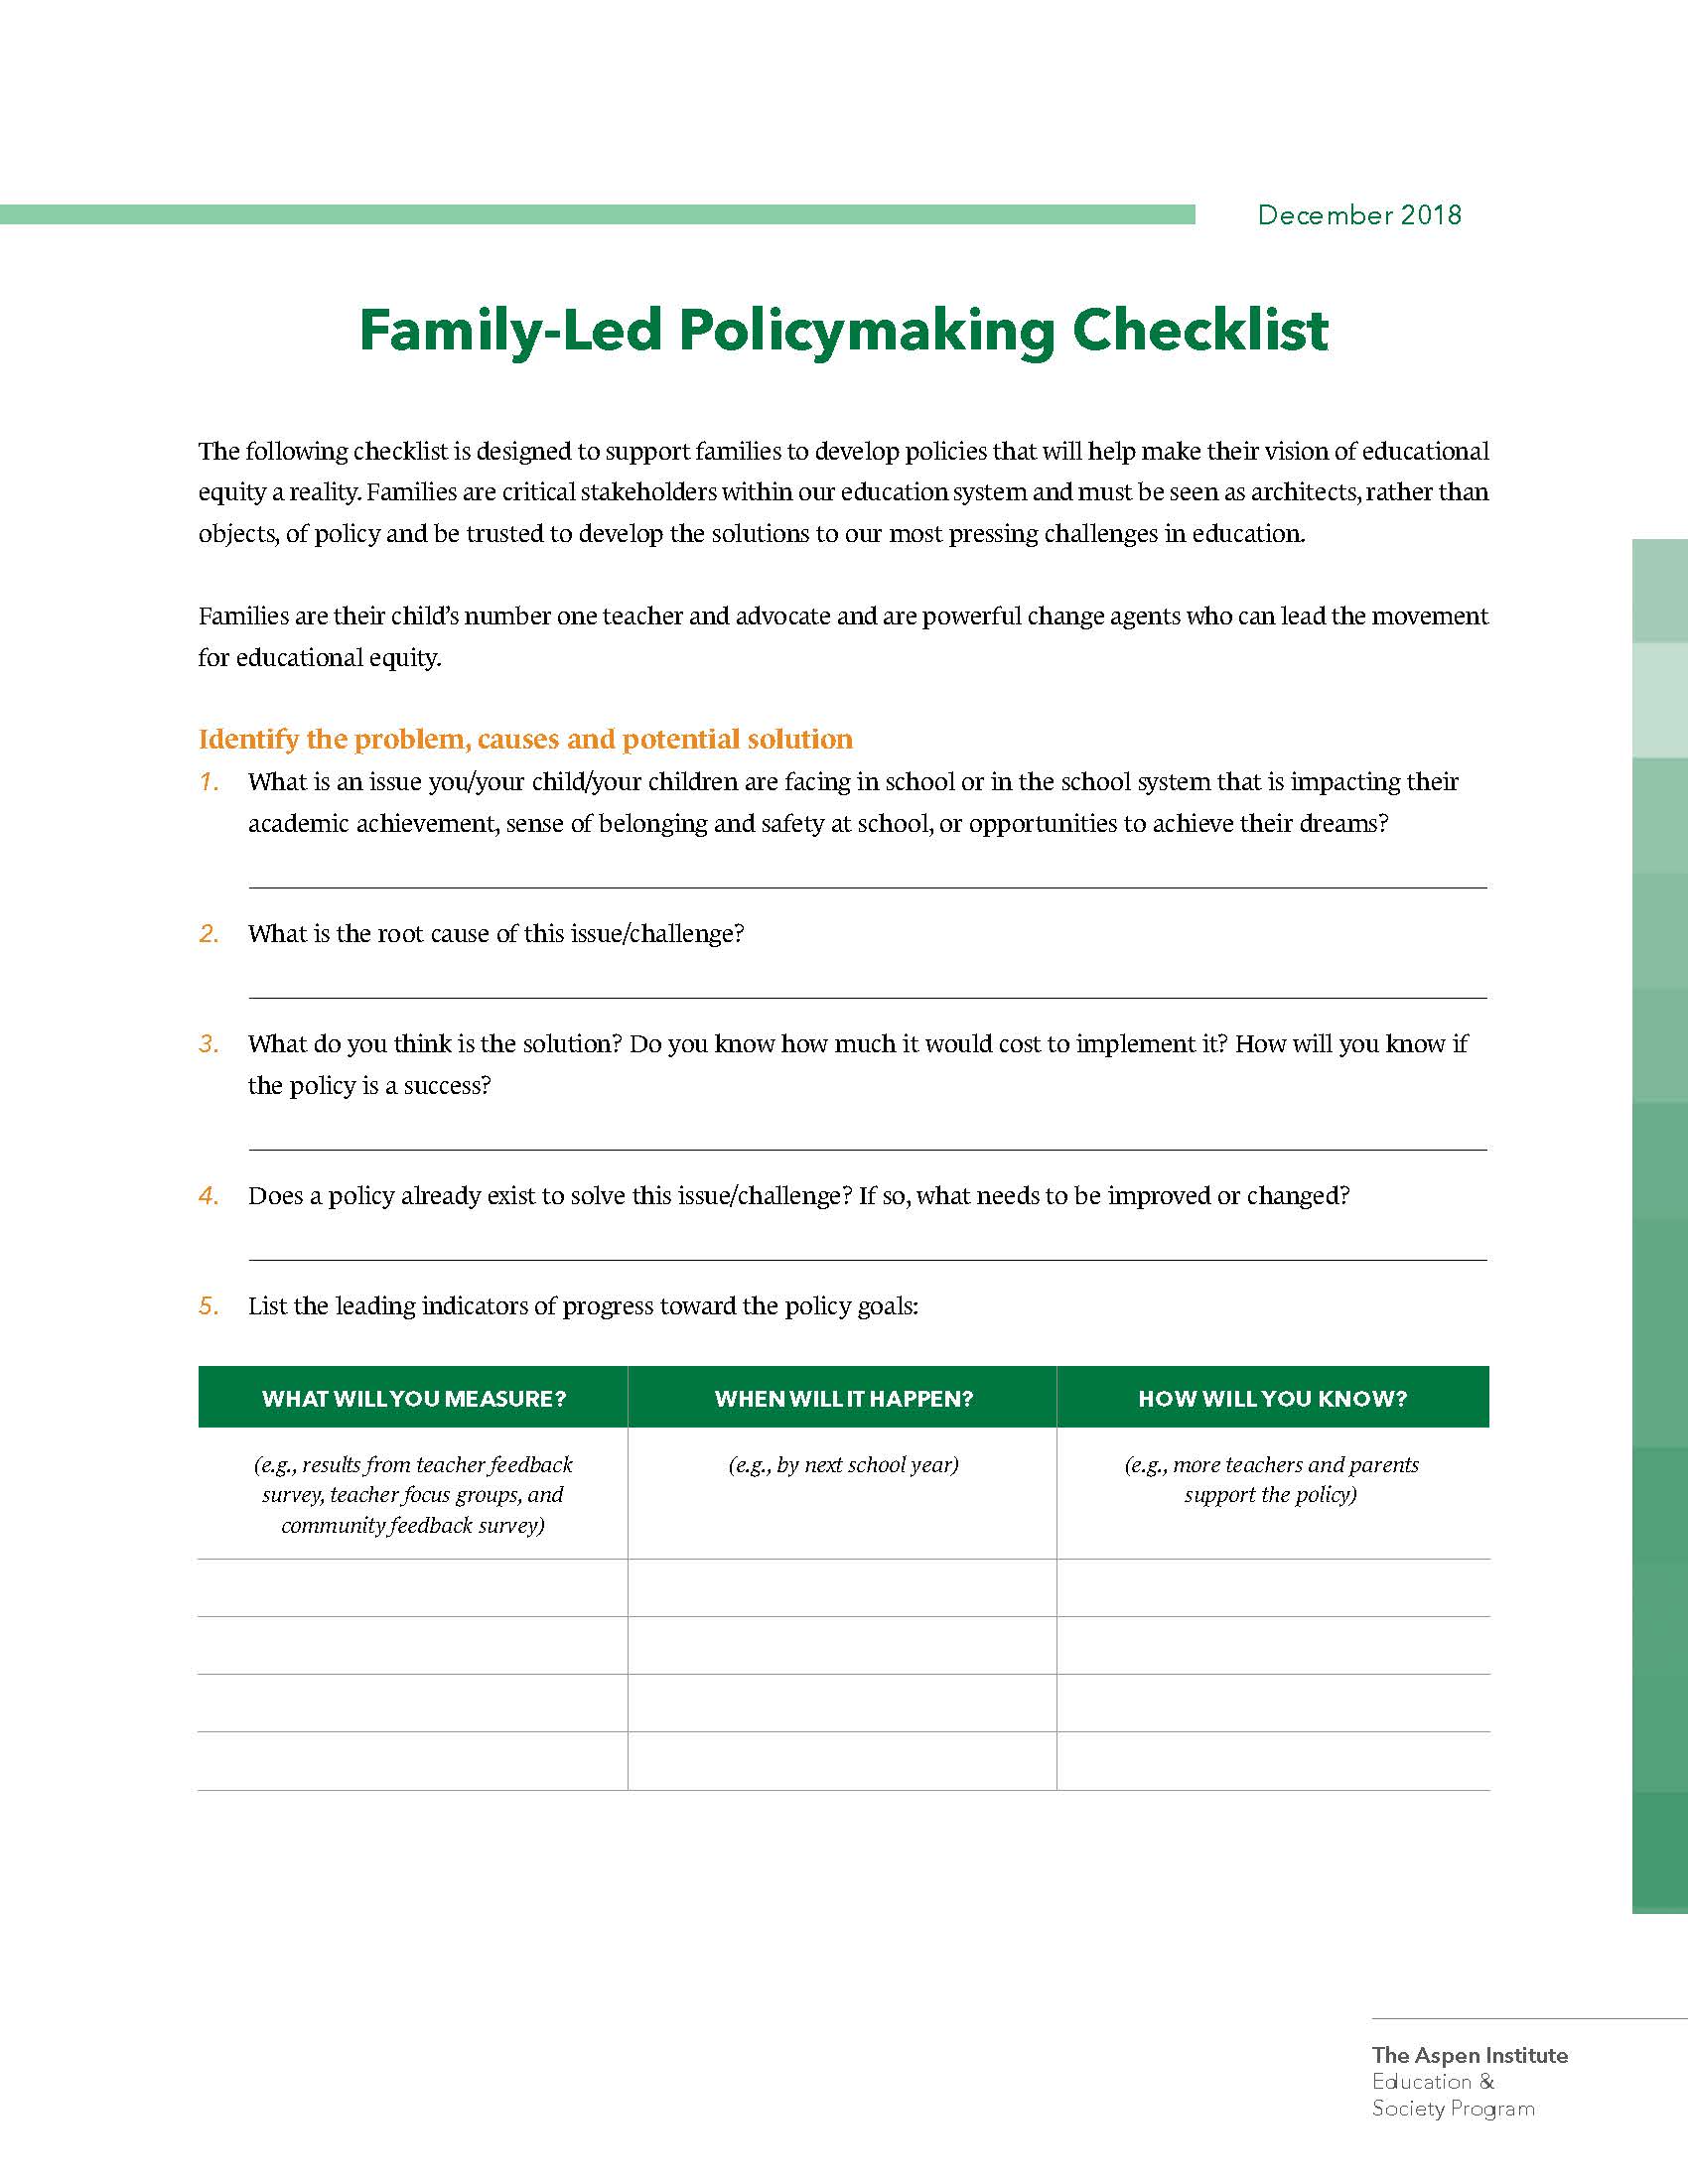 Checkliste für familiengeführte Politikgestaltung_Seite_1